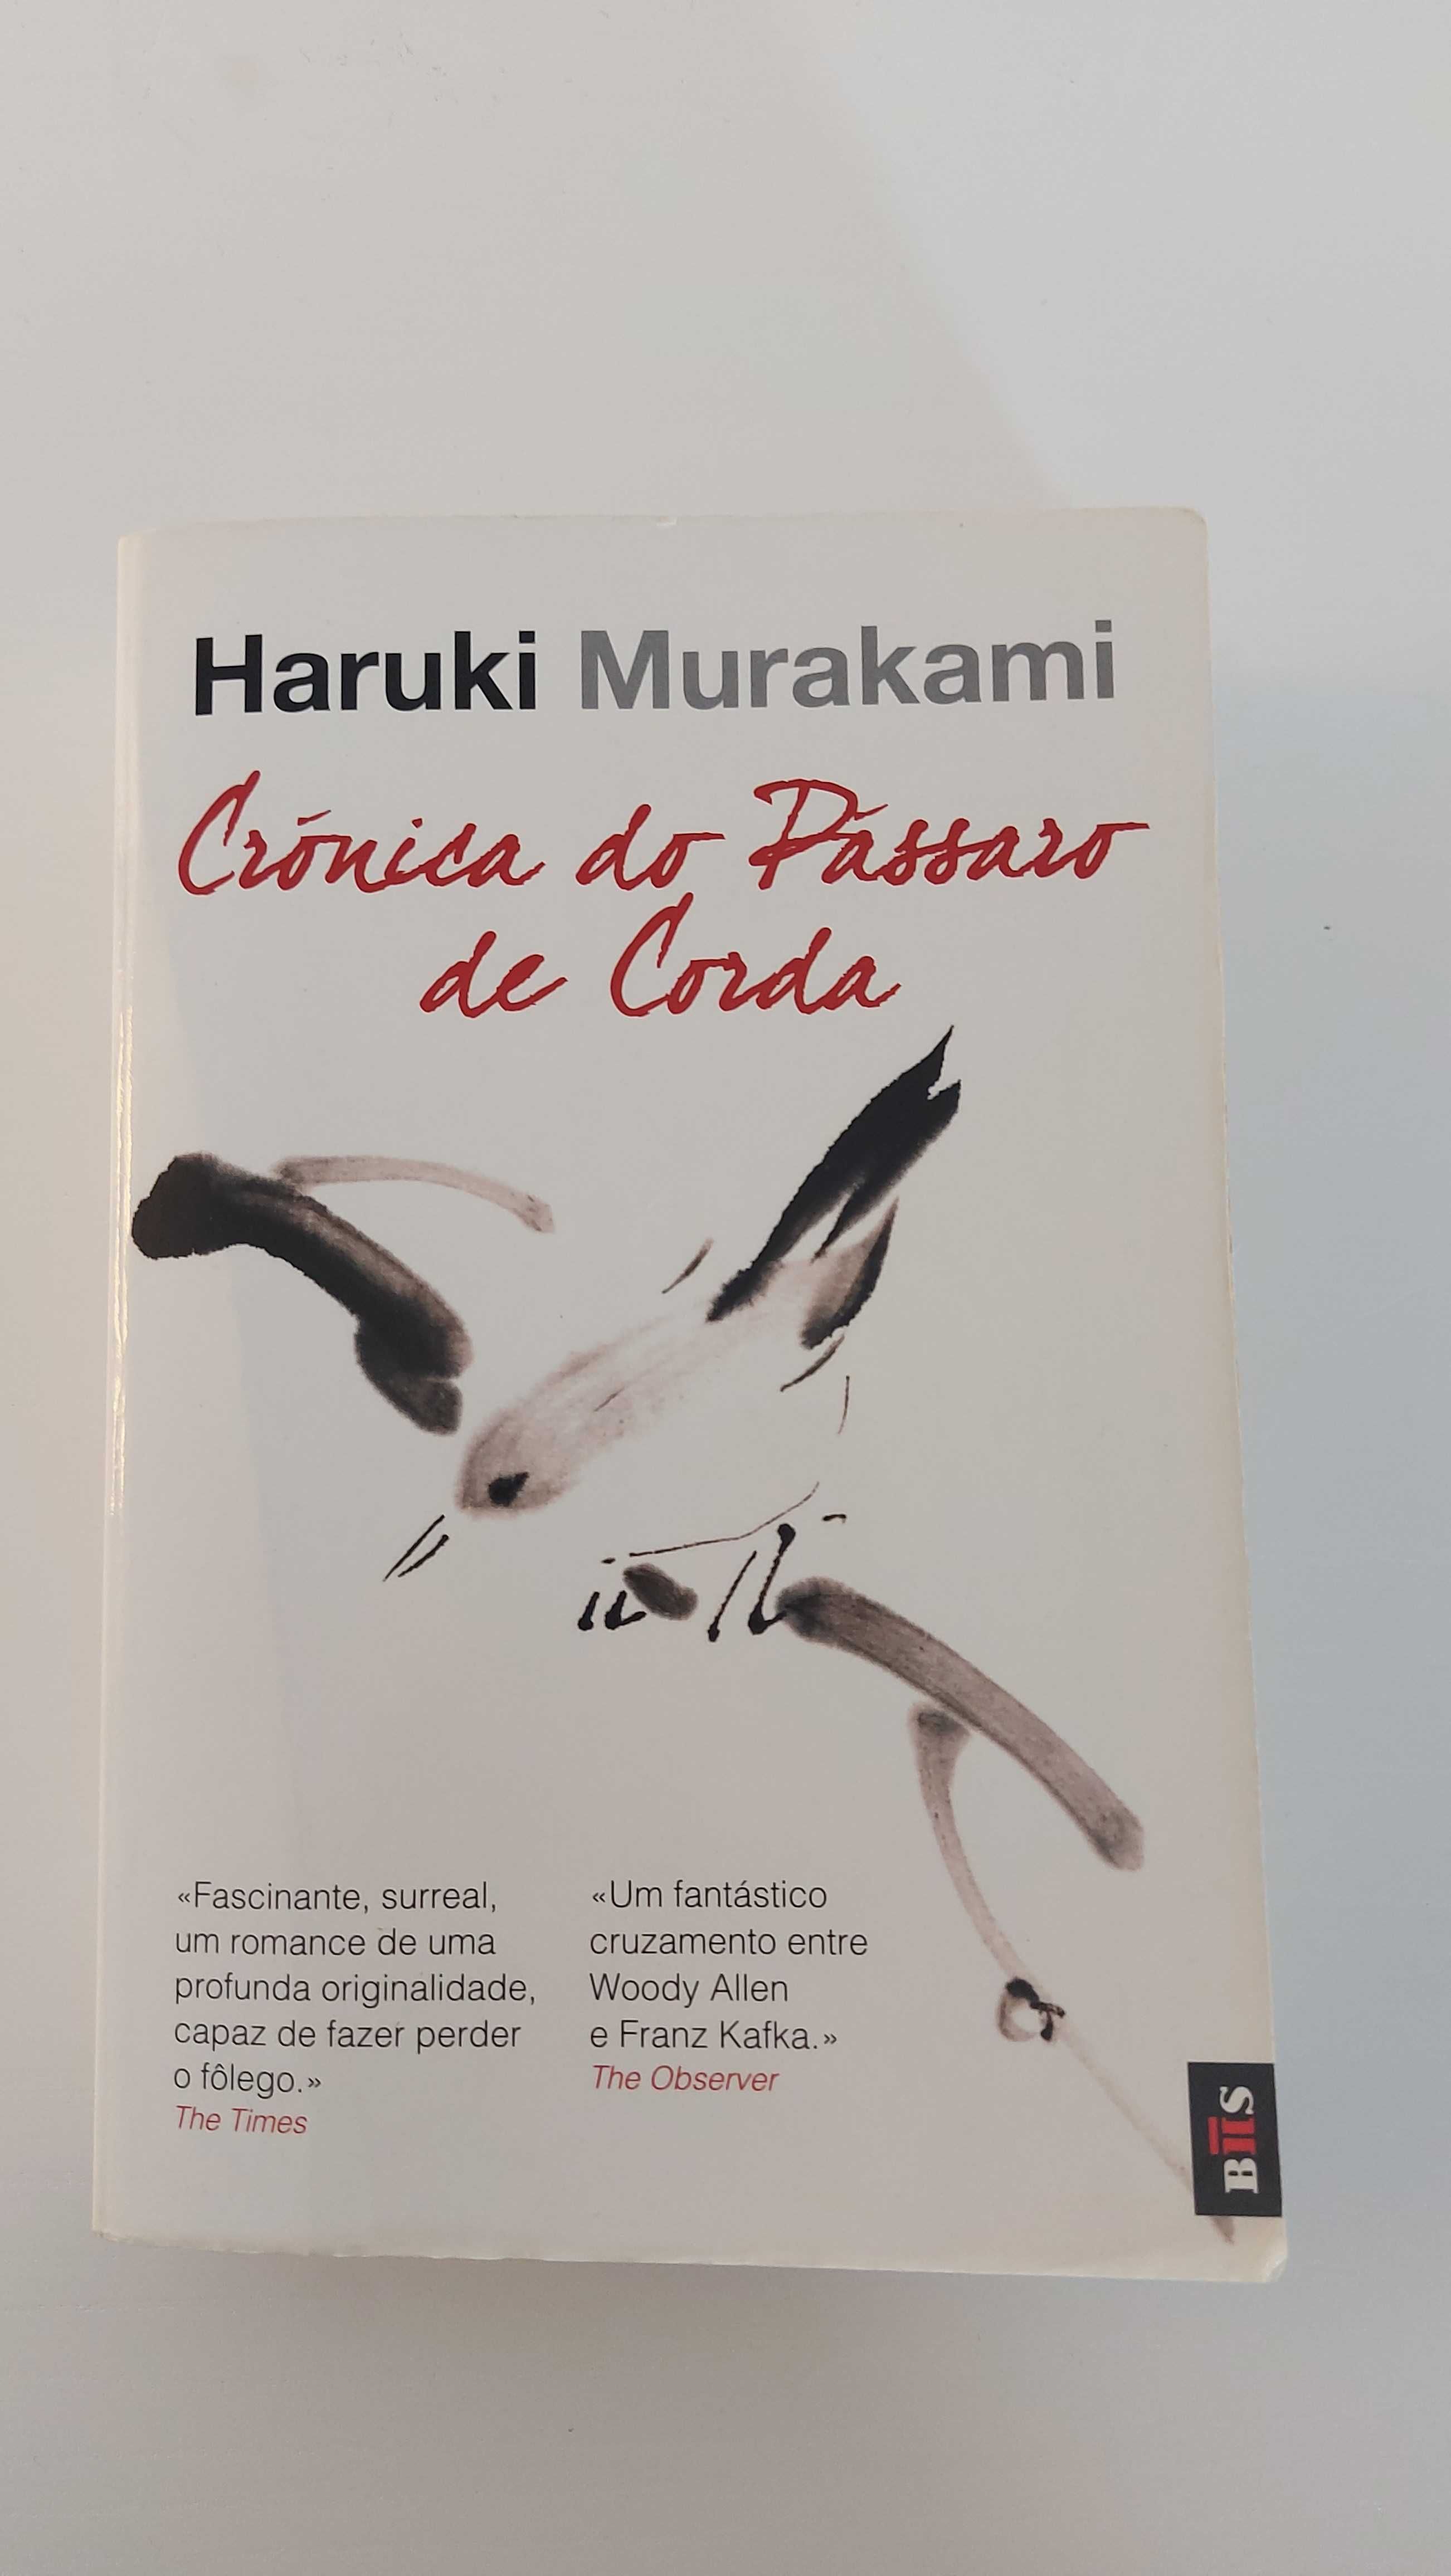 Livro "Crónica do Pássaro de Corda" de Haruki Murakami